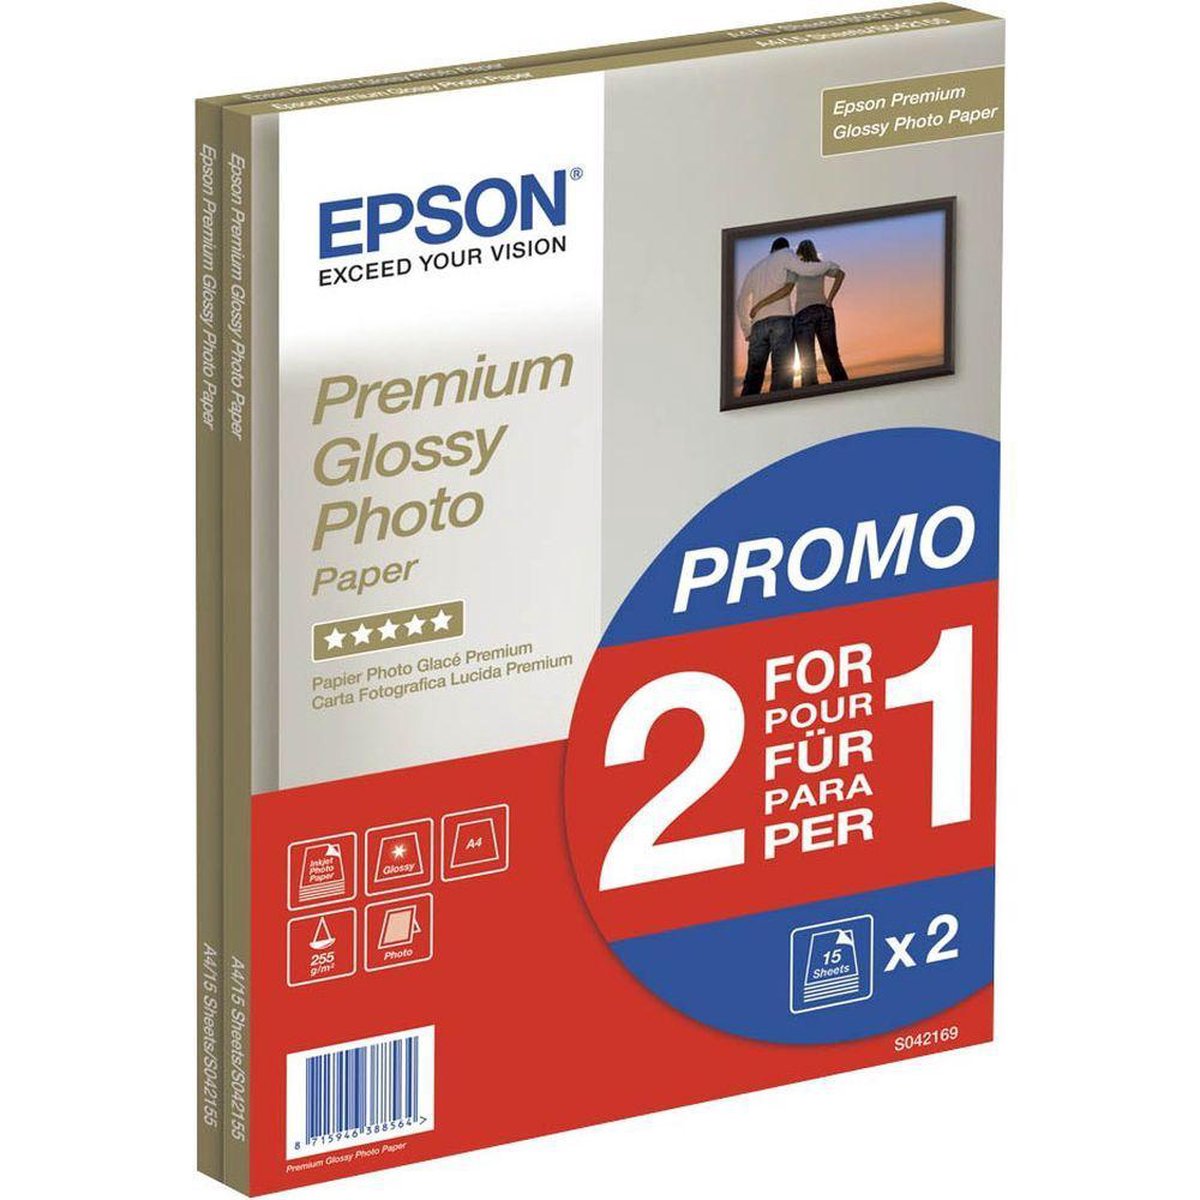 moeilijk Medic had het niet door Epson Premium Glossy Fotopapier - A4 (210 x 297 mm) / 255 g/m2 / 15 vellen  | bol.com